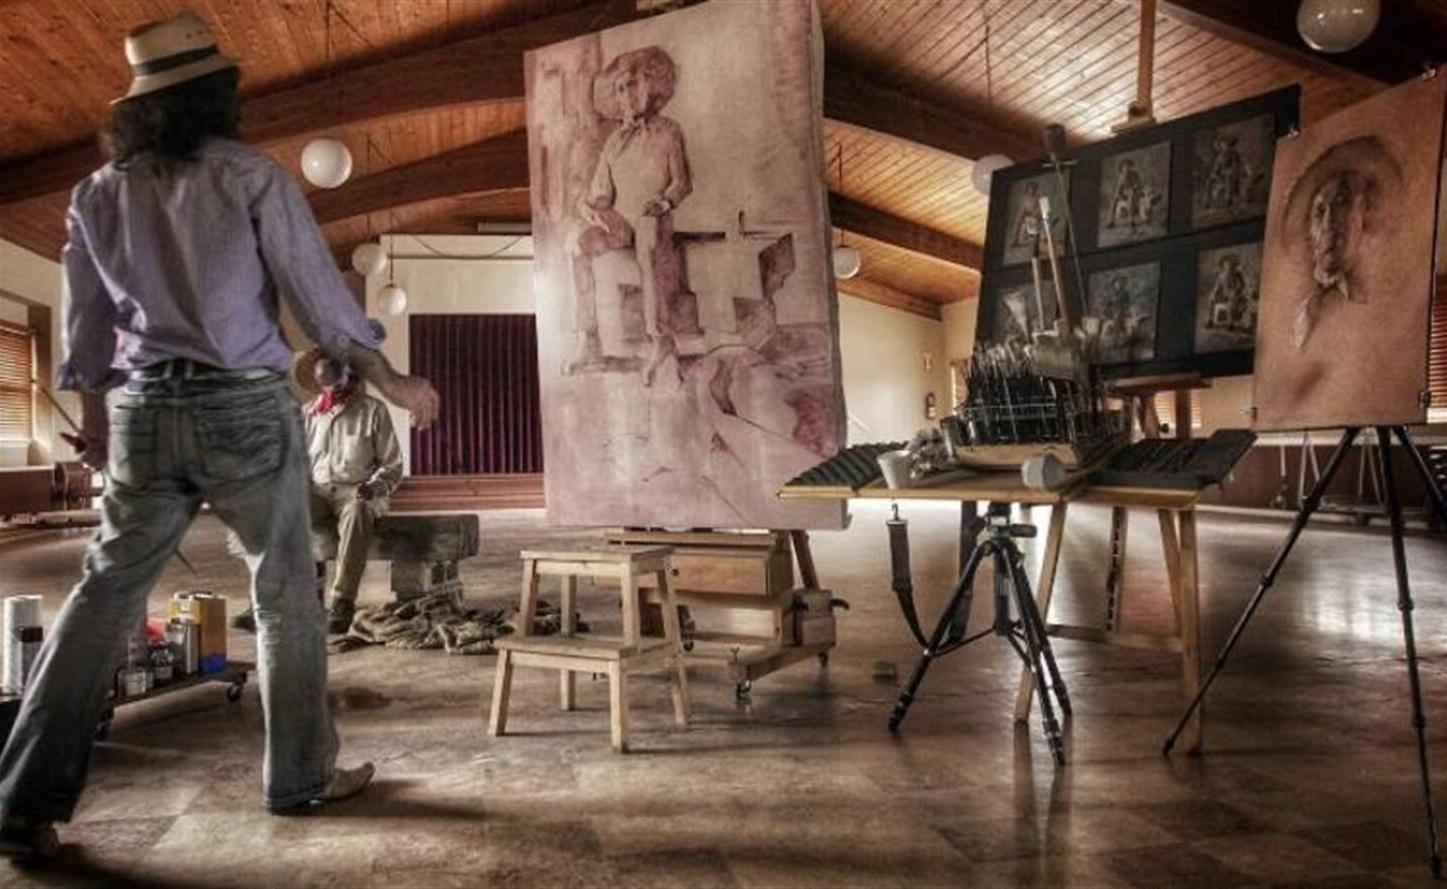 Culver City Artist Laureate Alexey Steele at work in his studio, working on painting titled "El Rey Trabajador" in 2016